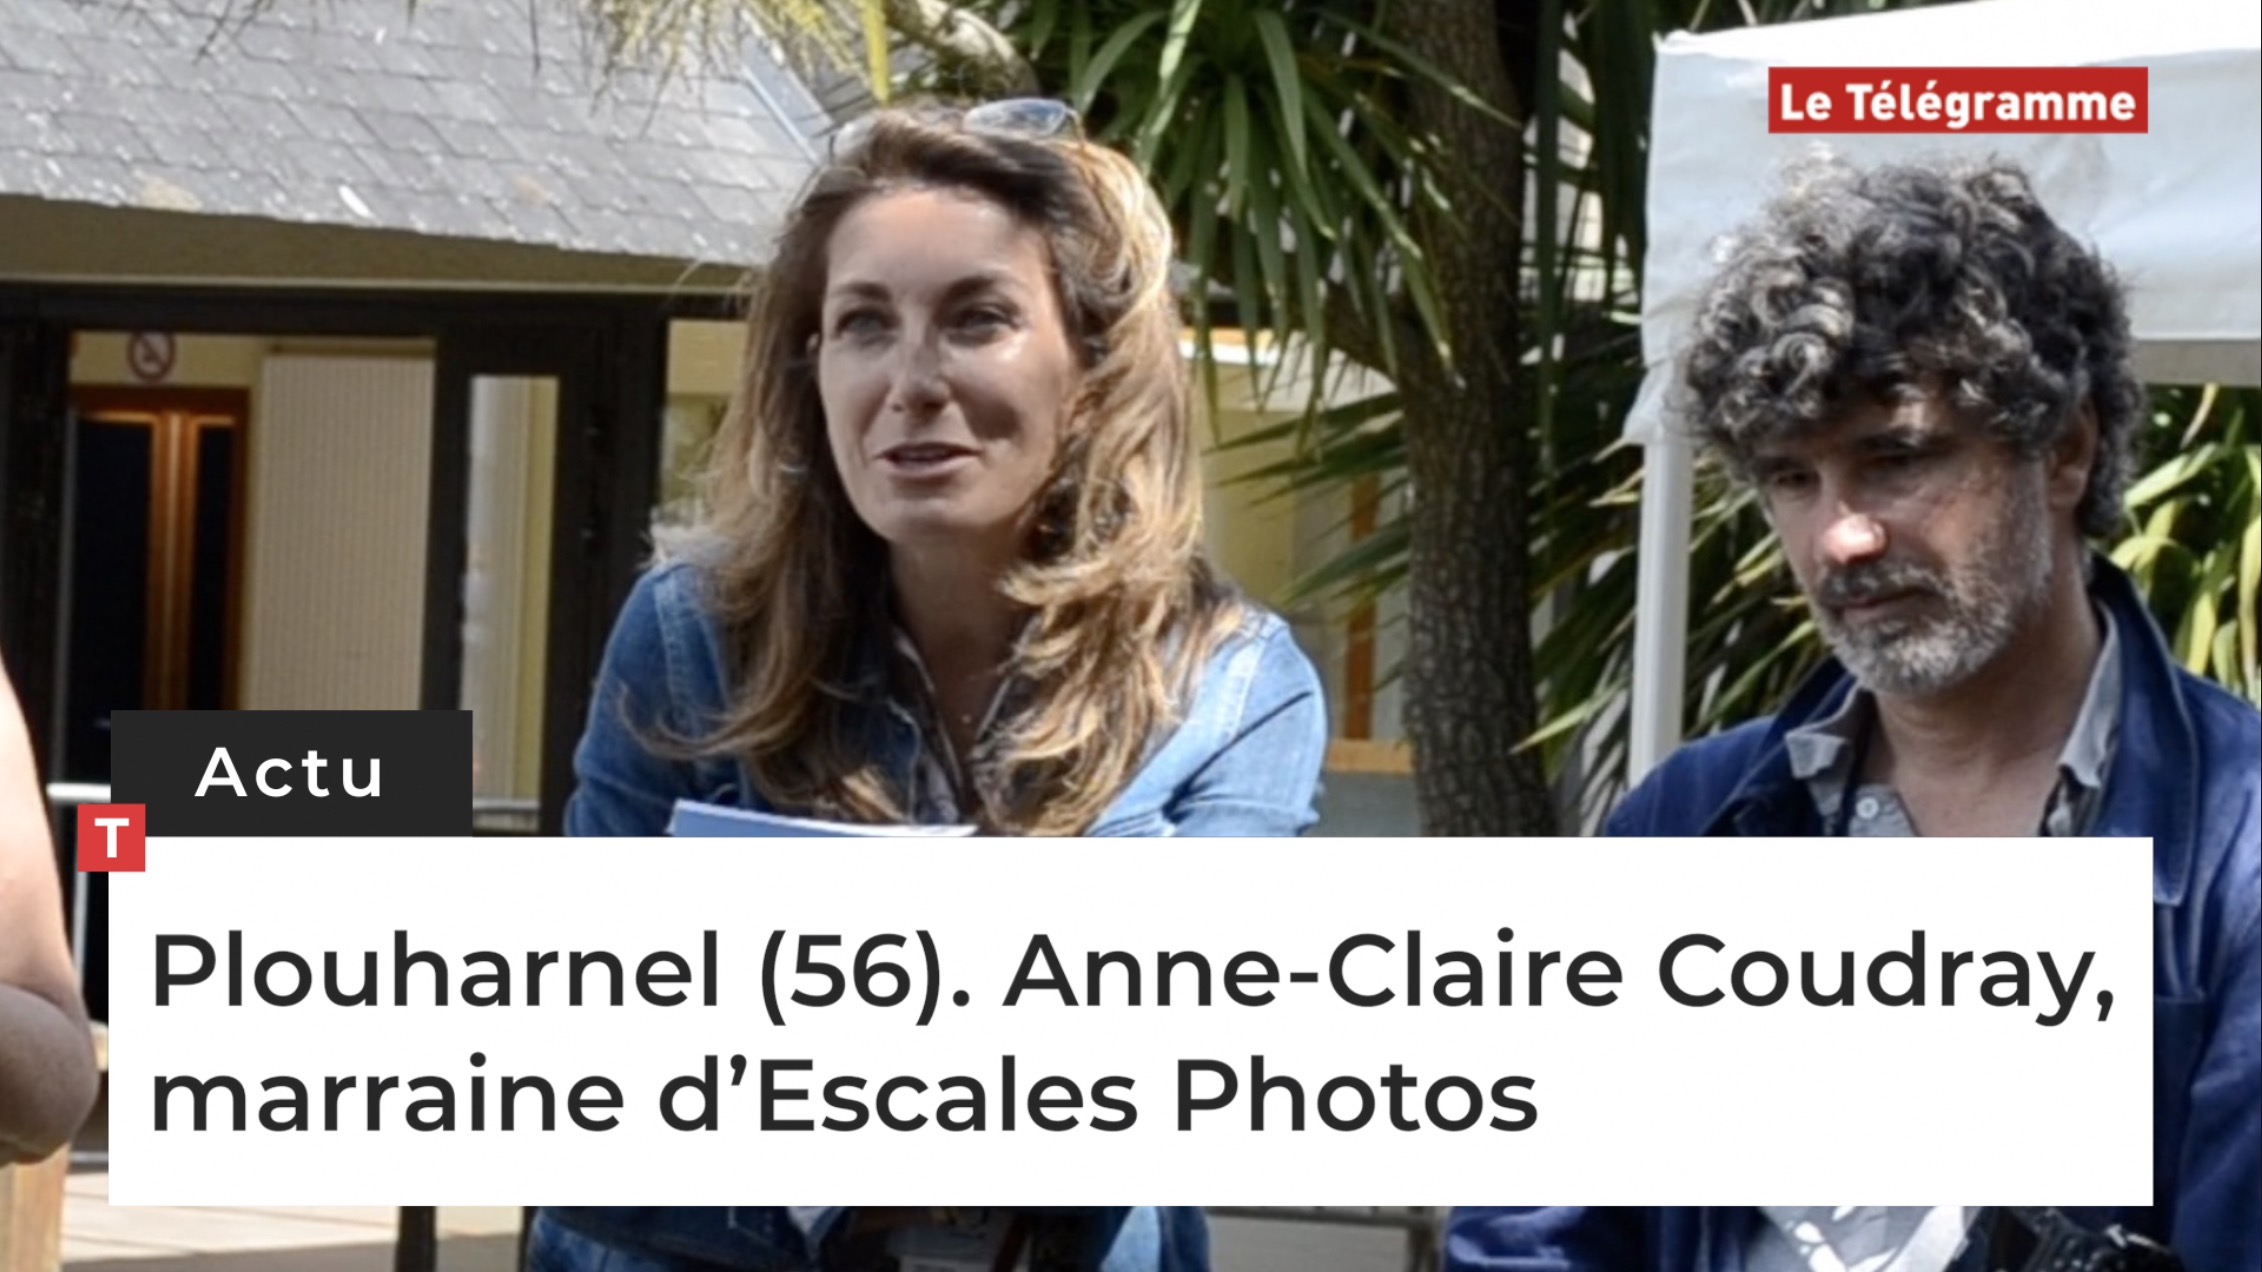 Plouharnel (56). Anne-Claire Coudray, marraine d’Escales Photos (Le Télégramme)